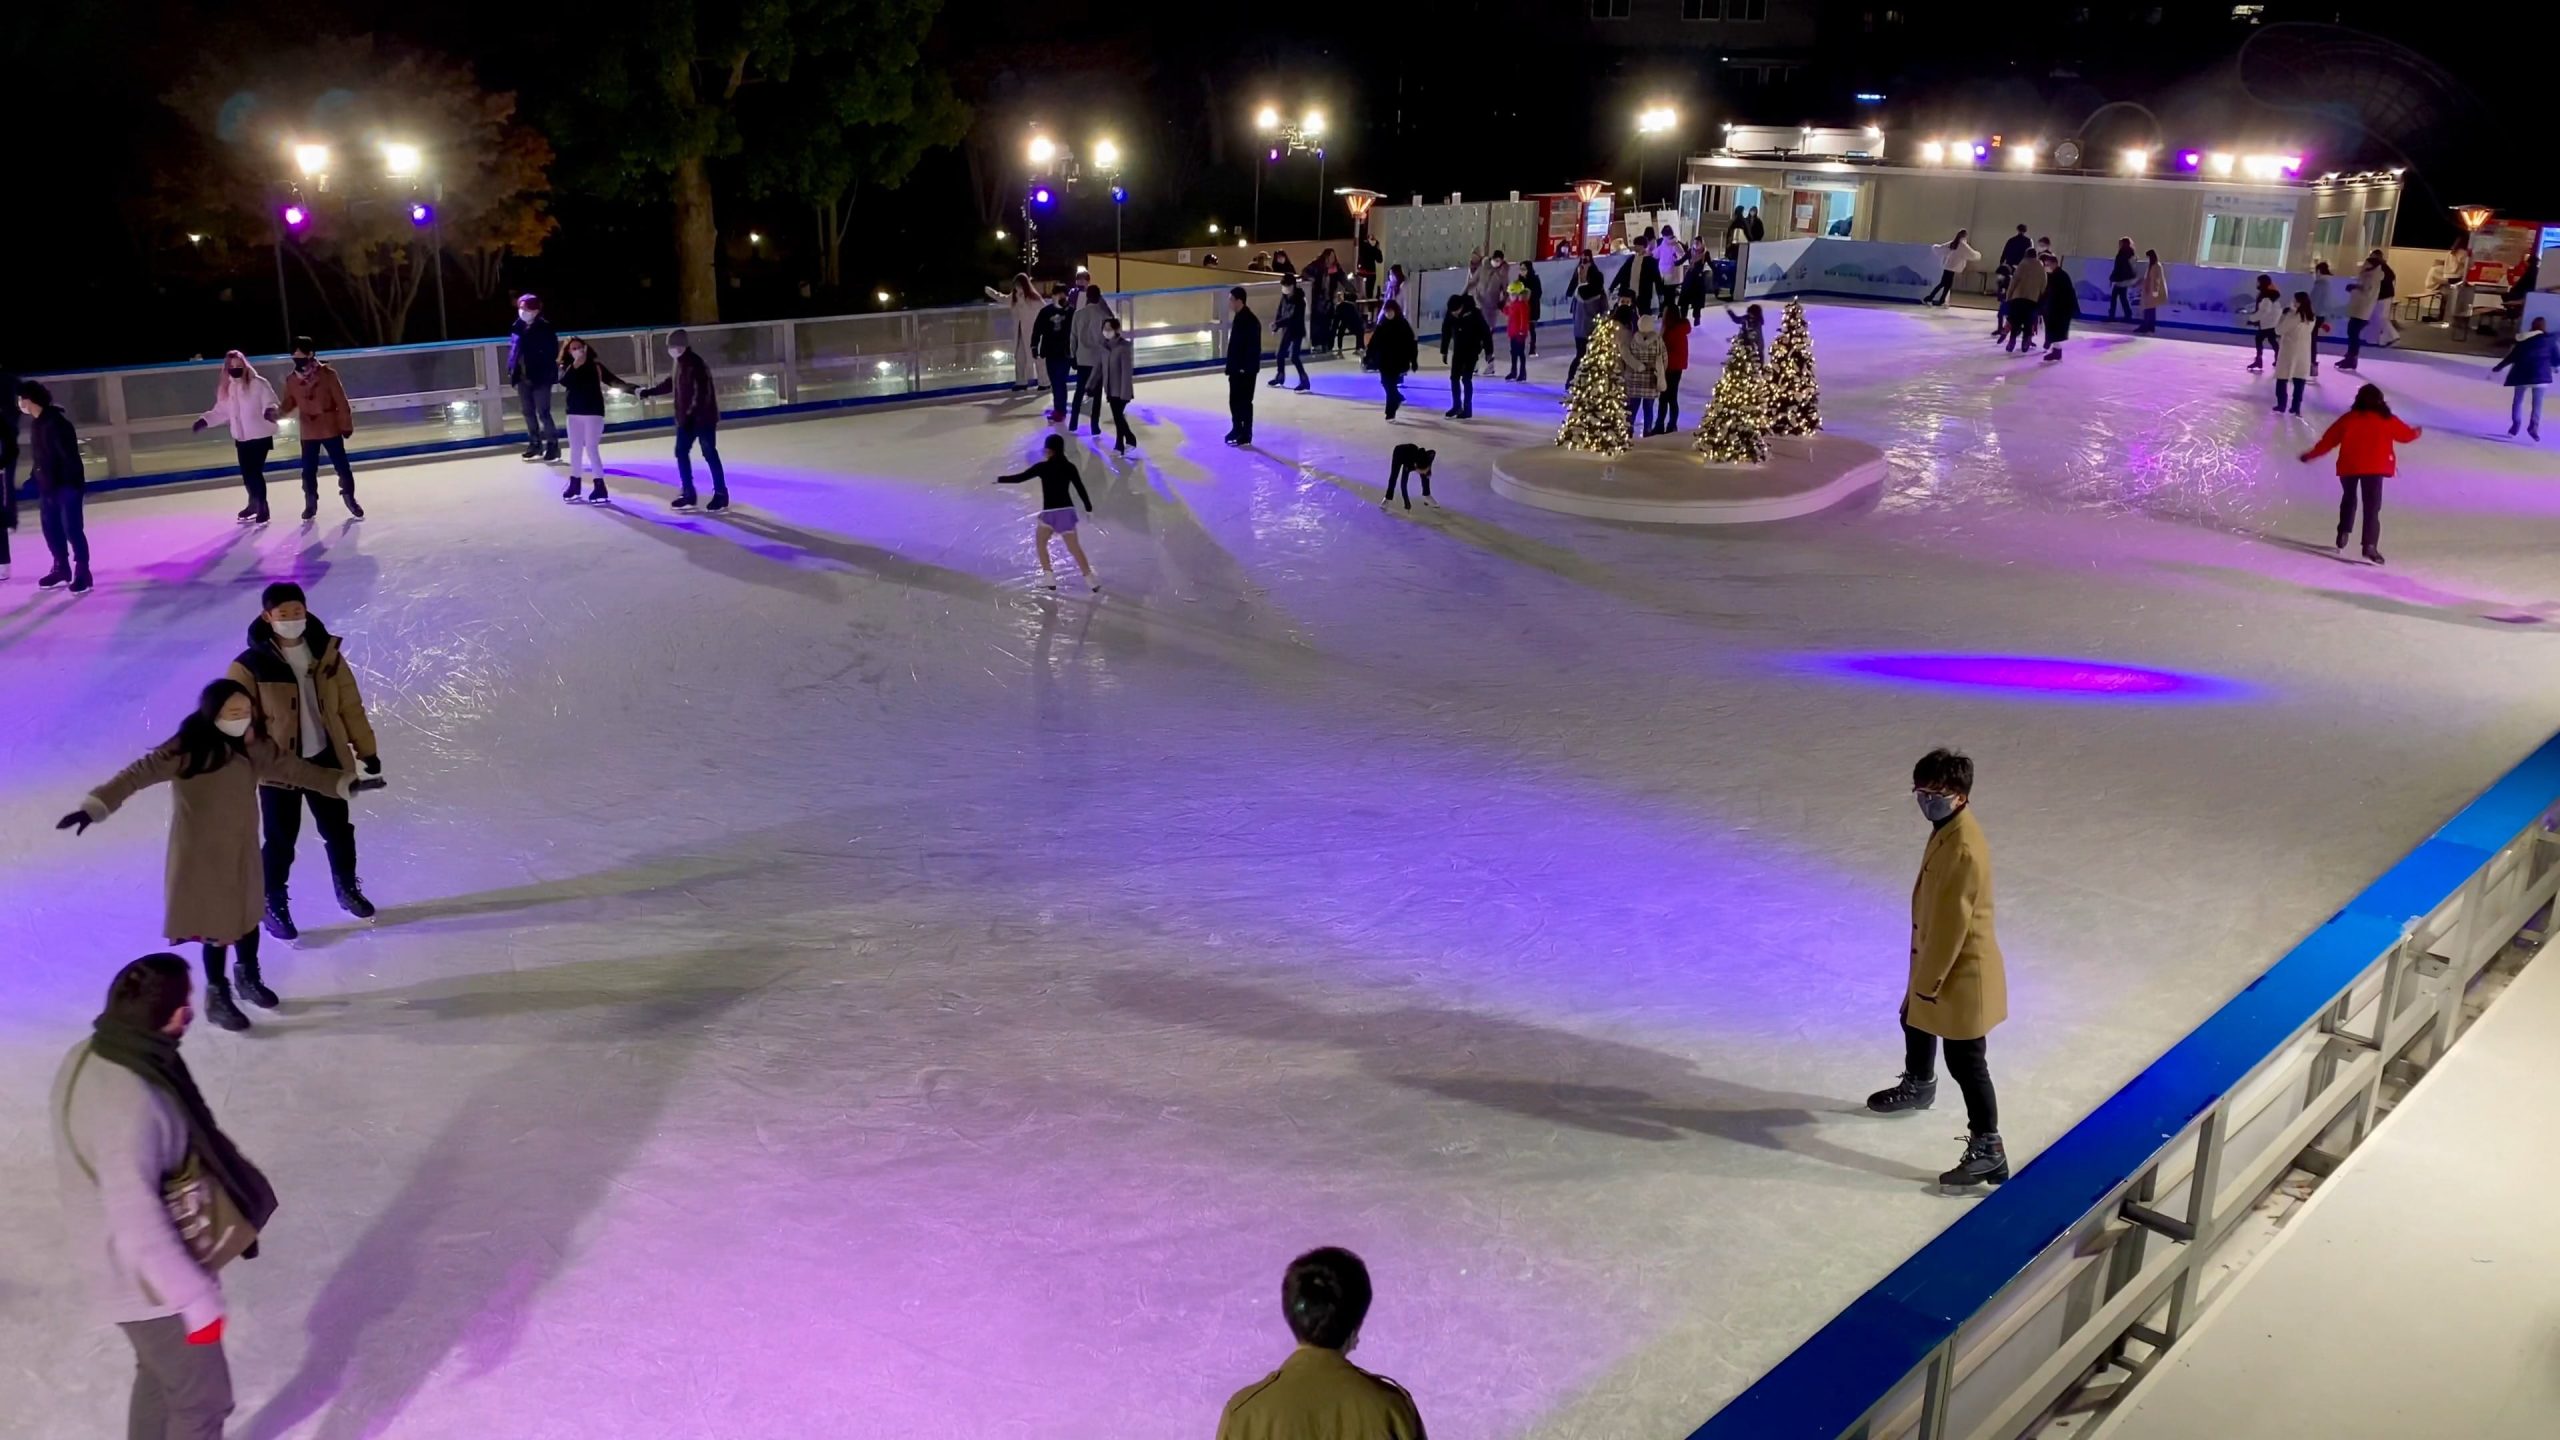 Bezoek de schaatsscore van Tokyo in het midden van Japan.